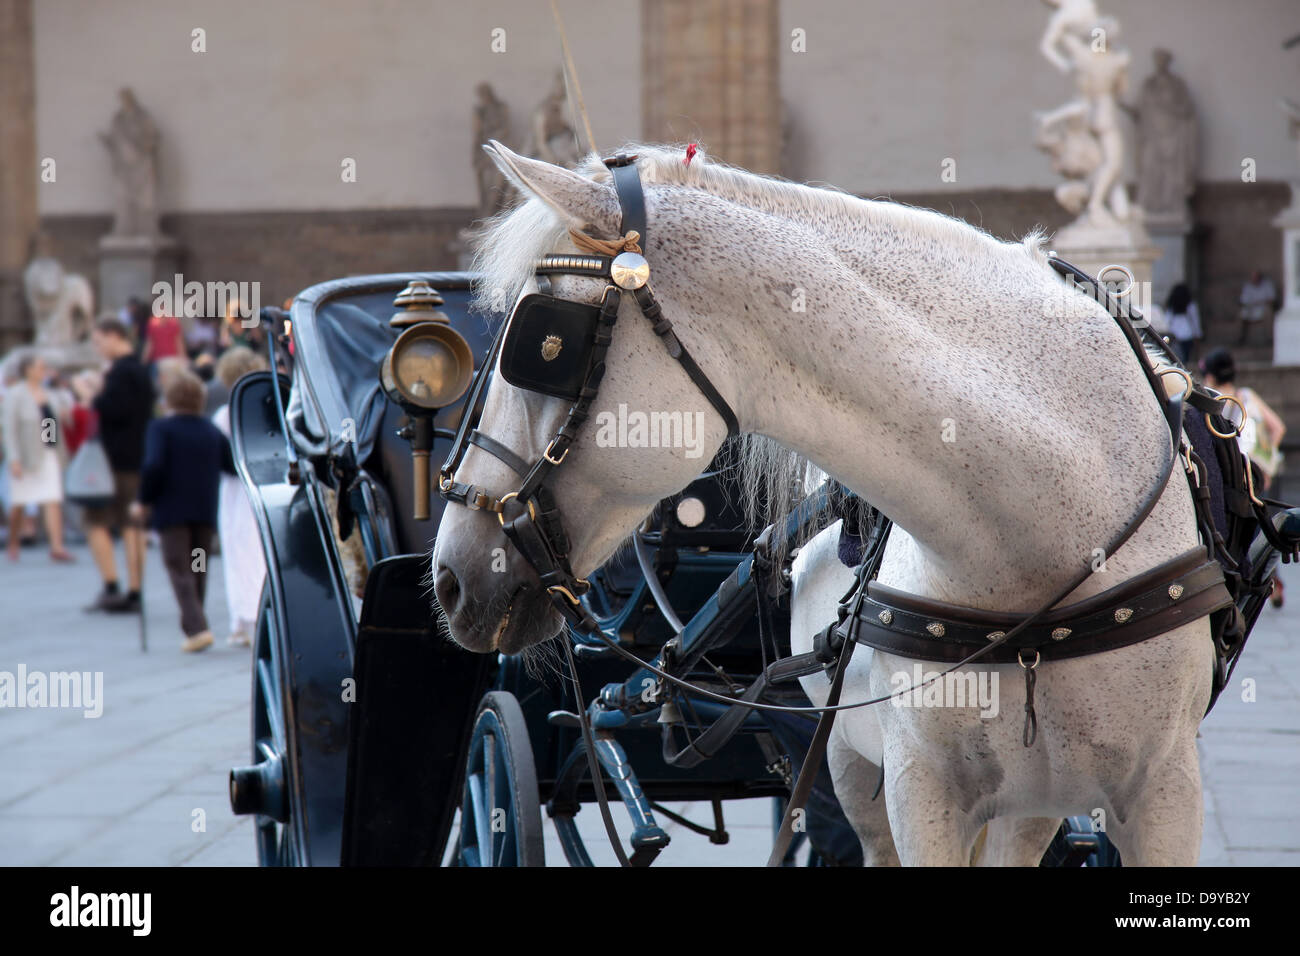 Pferdekutsche auf Piazza della Signoria in Florenz Stockfoto